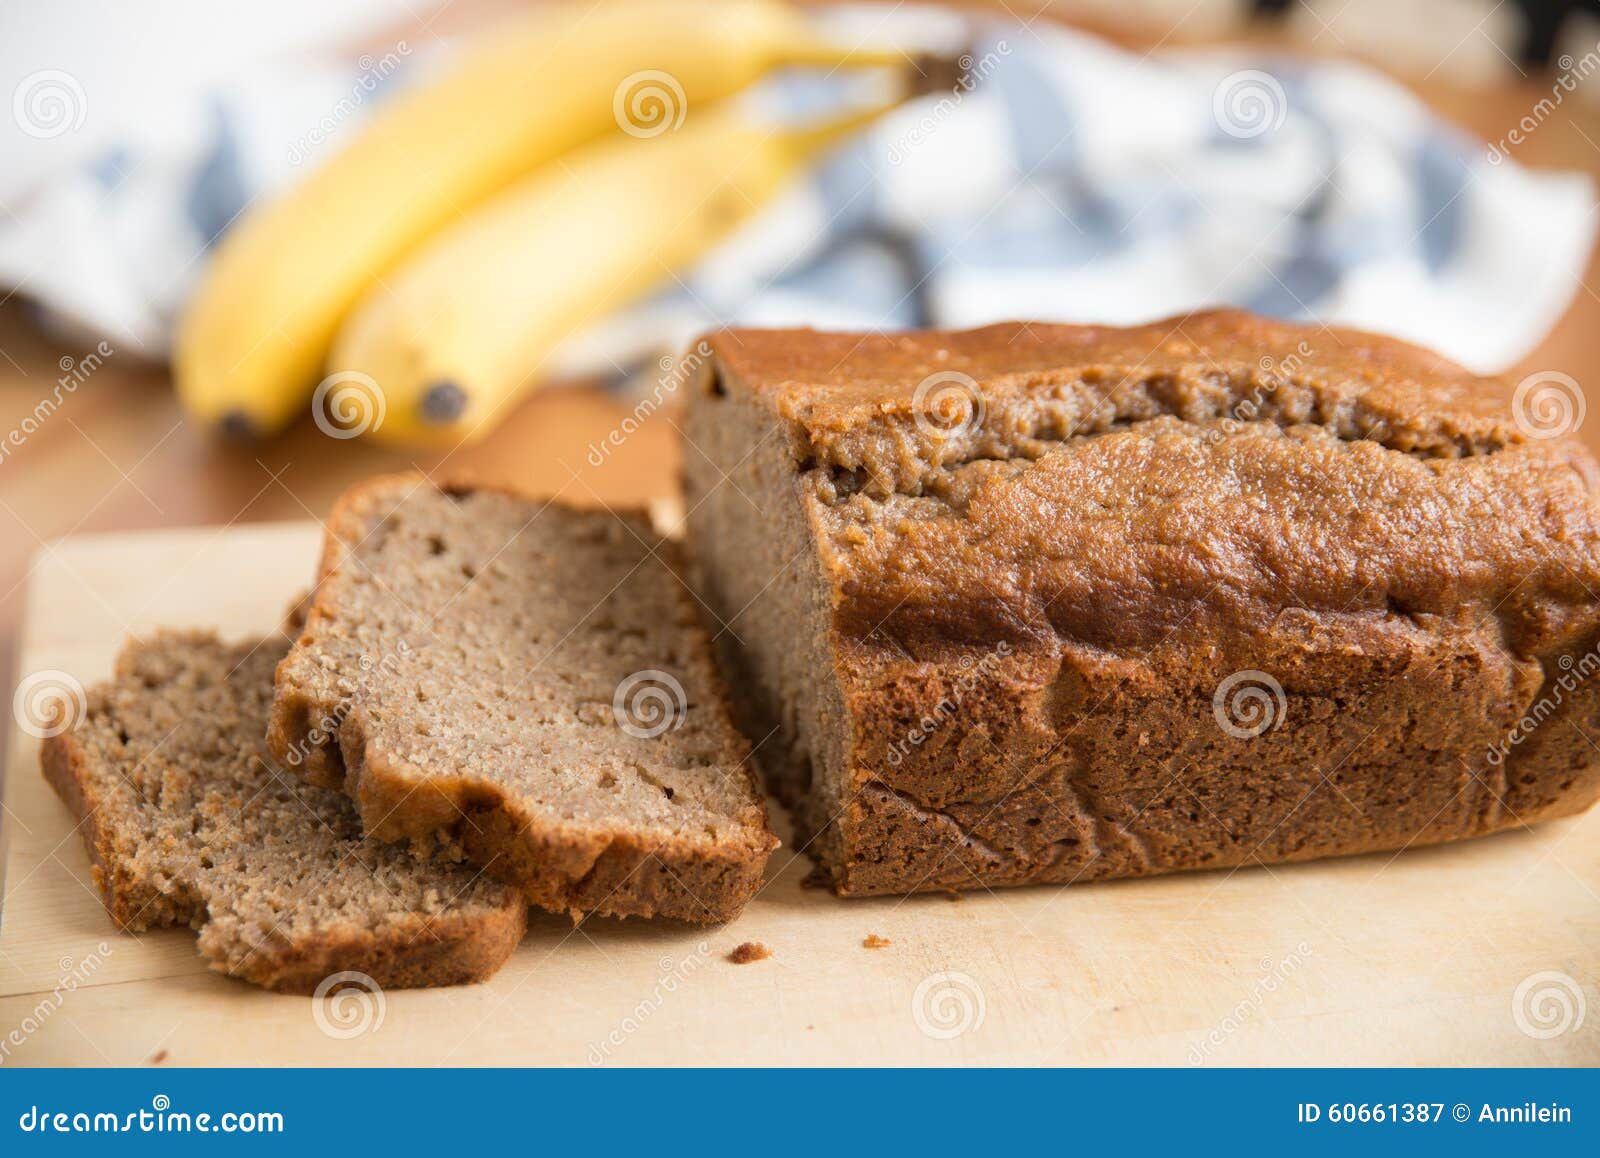 在切片的黄油香蕉面包 库存照片. 图片 包括有 营养, 剪切, 大蕉, 健康, 会议室, 蛋糕, 烹调, 食物 - 76358888